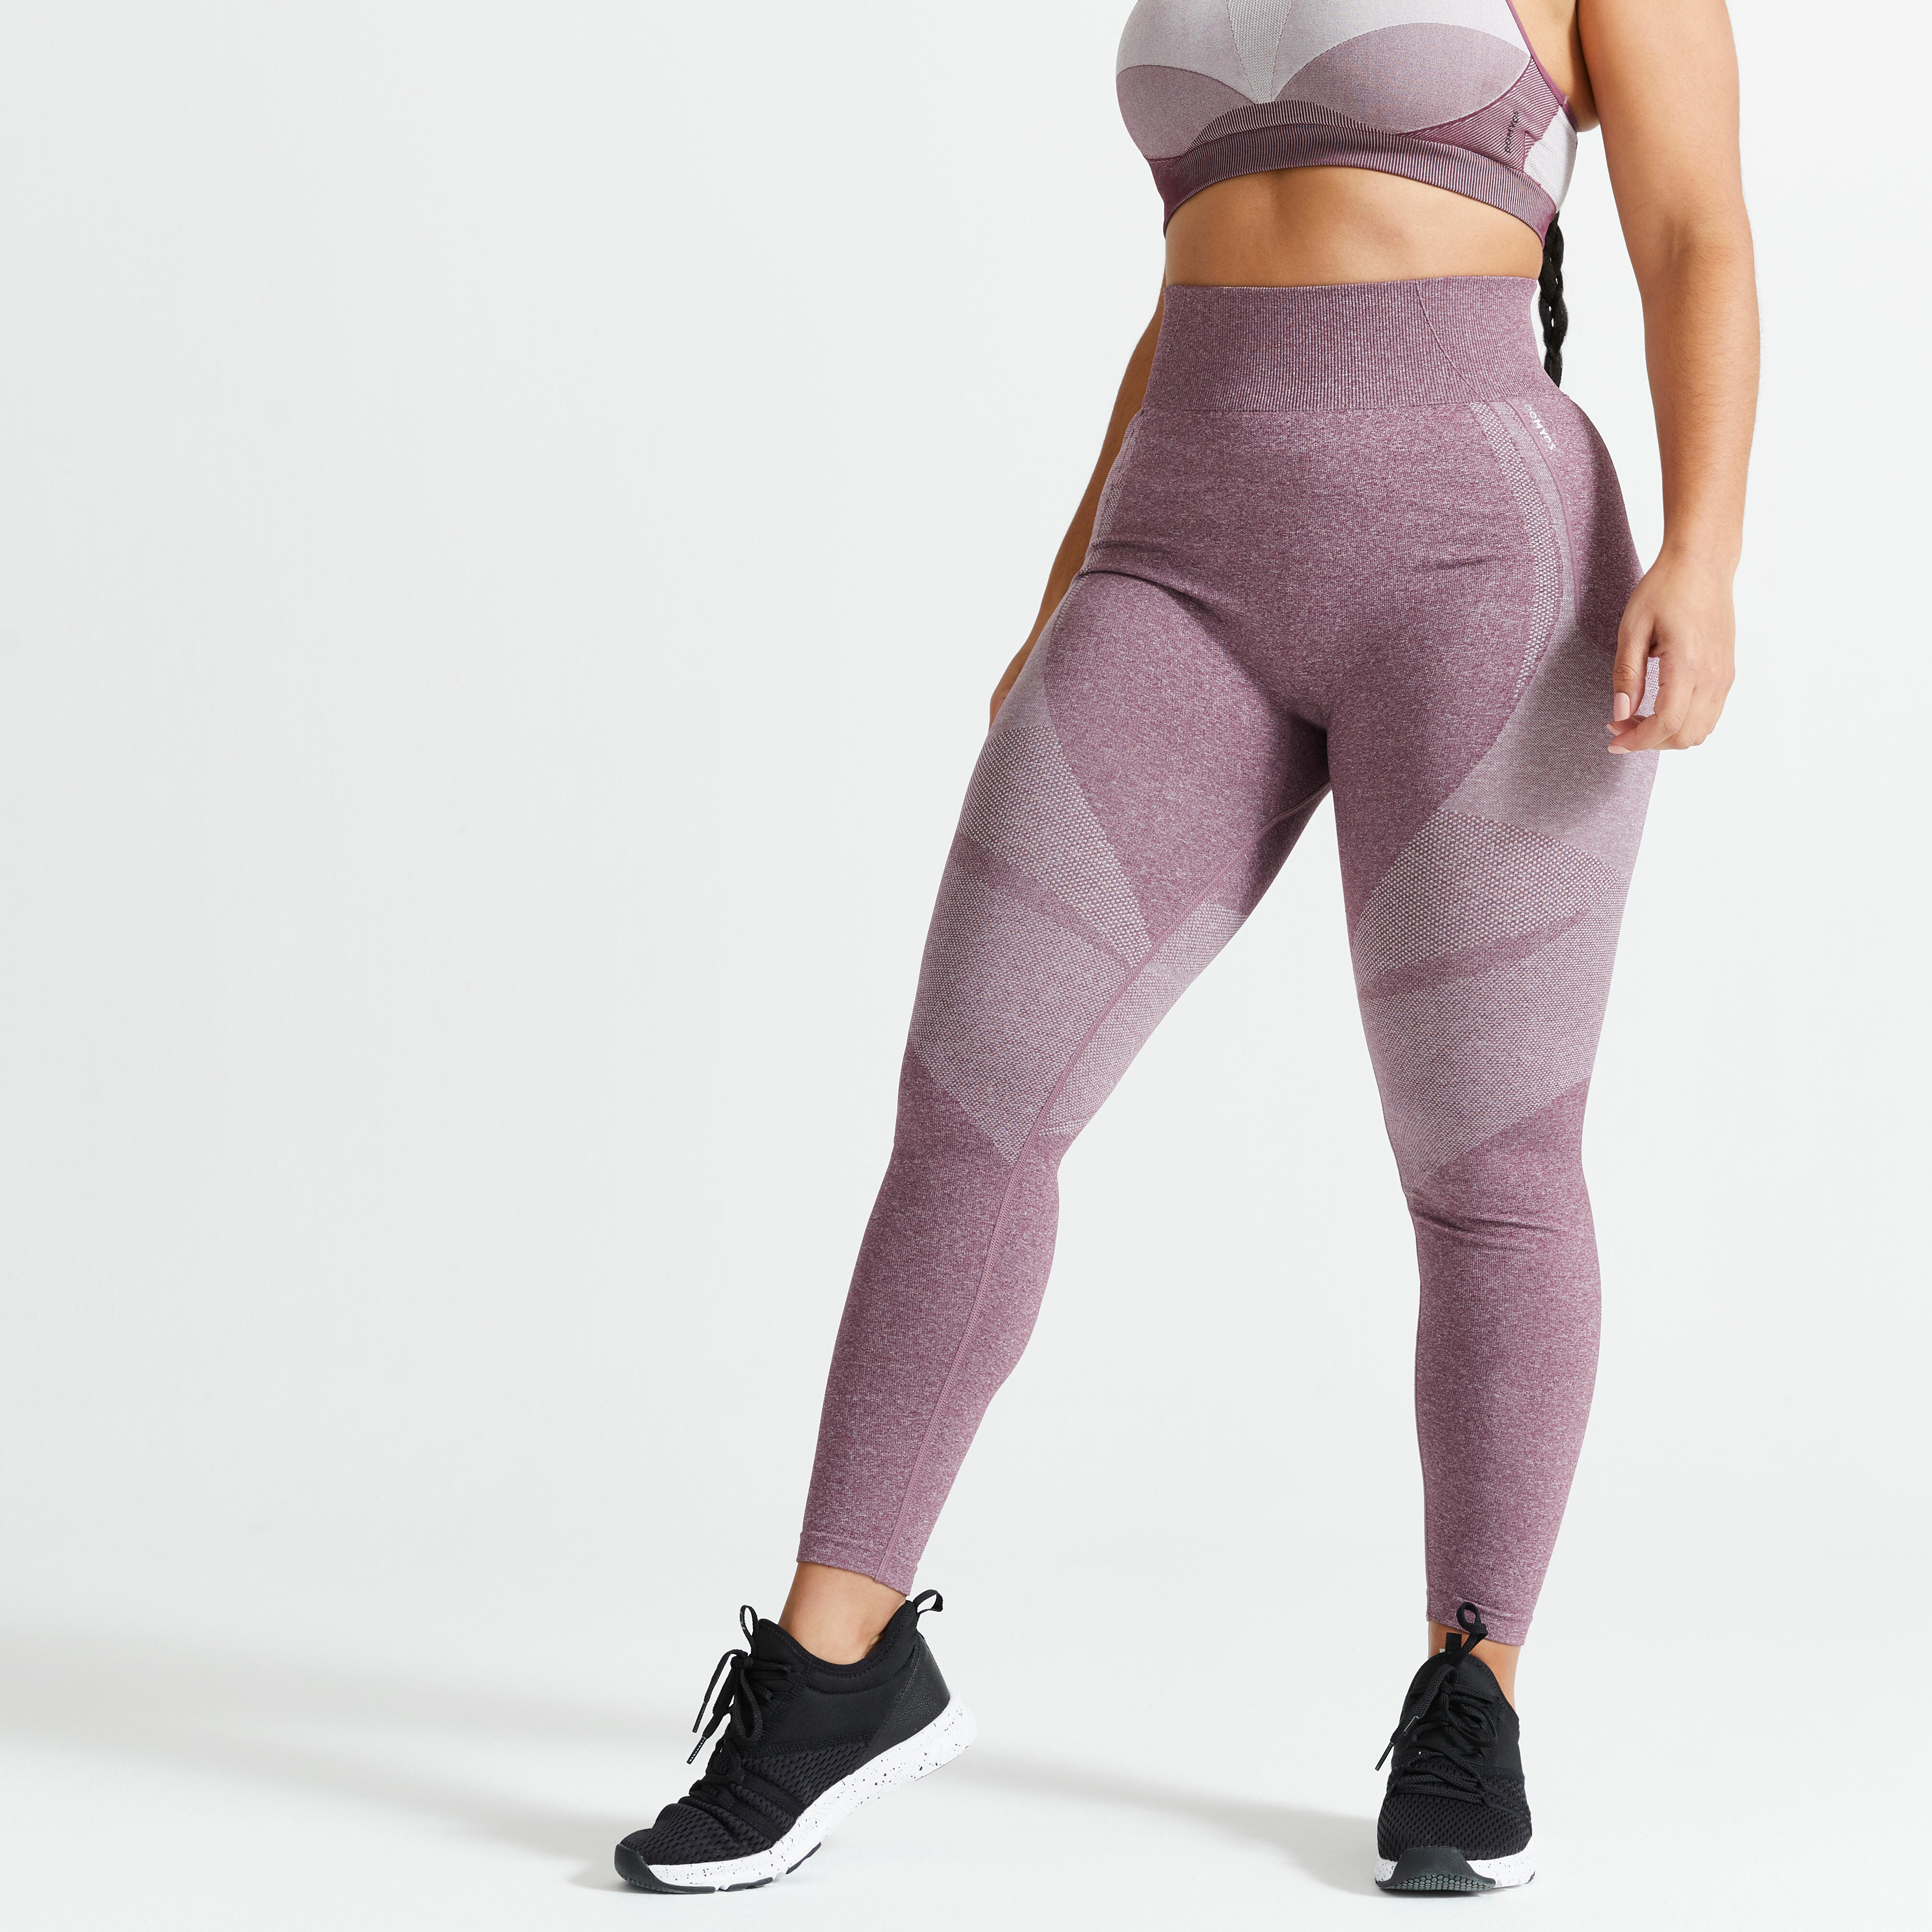 Share more than 116 gymshark textured leggings